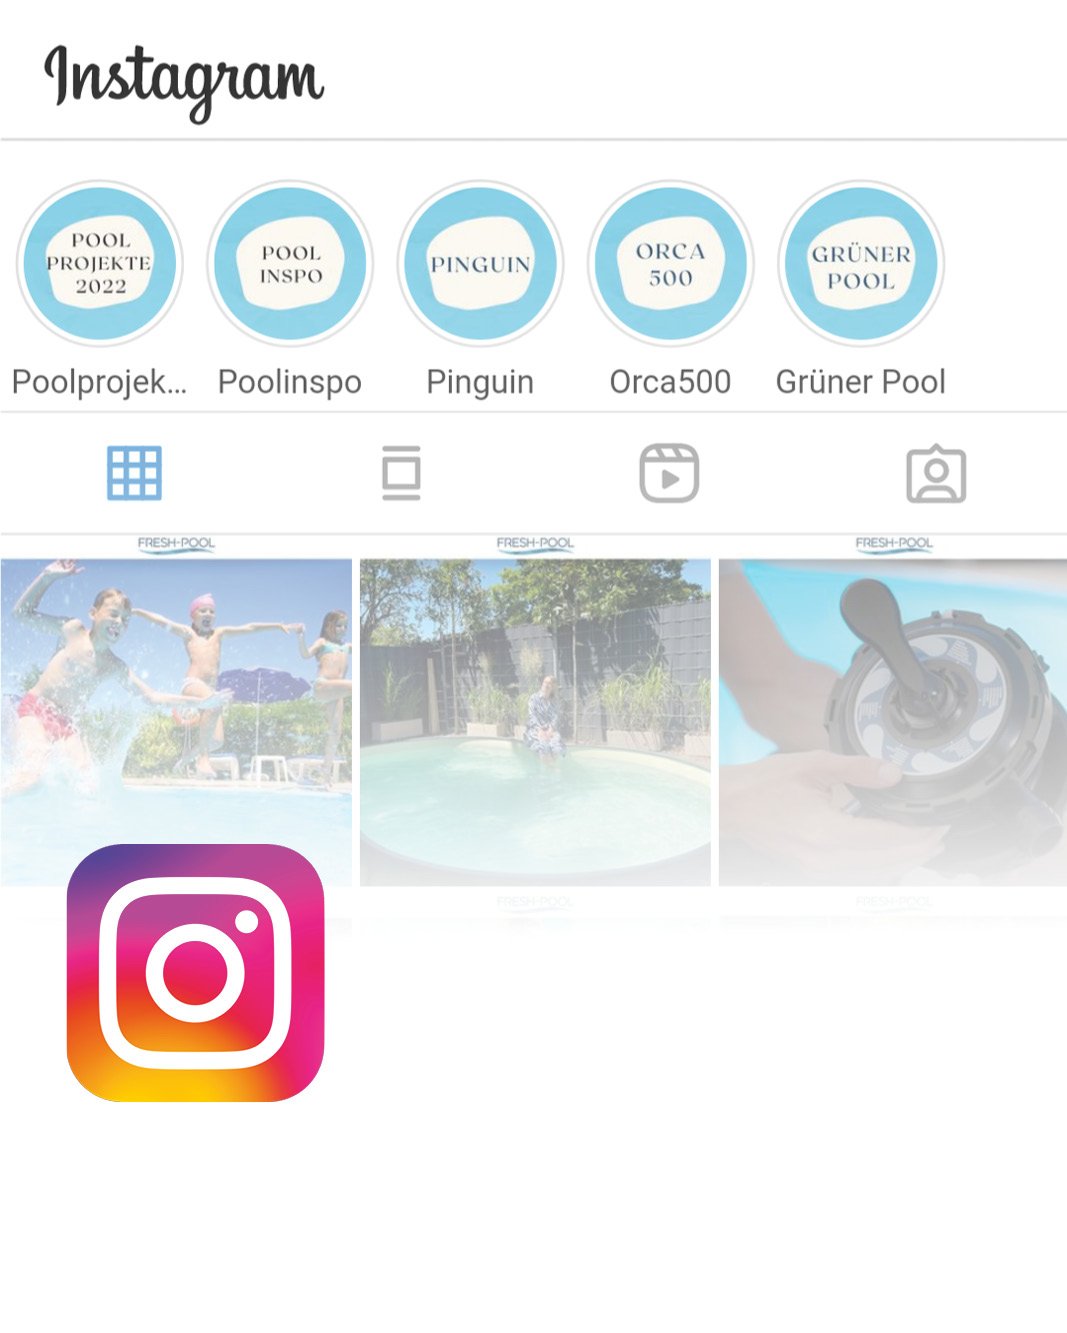 Link Fresh-Pool Instagram